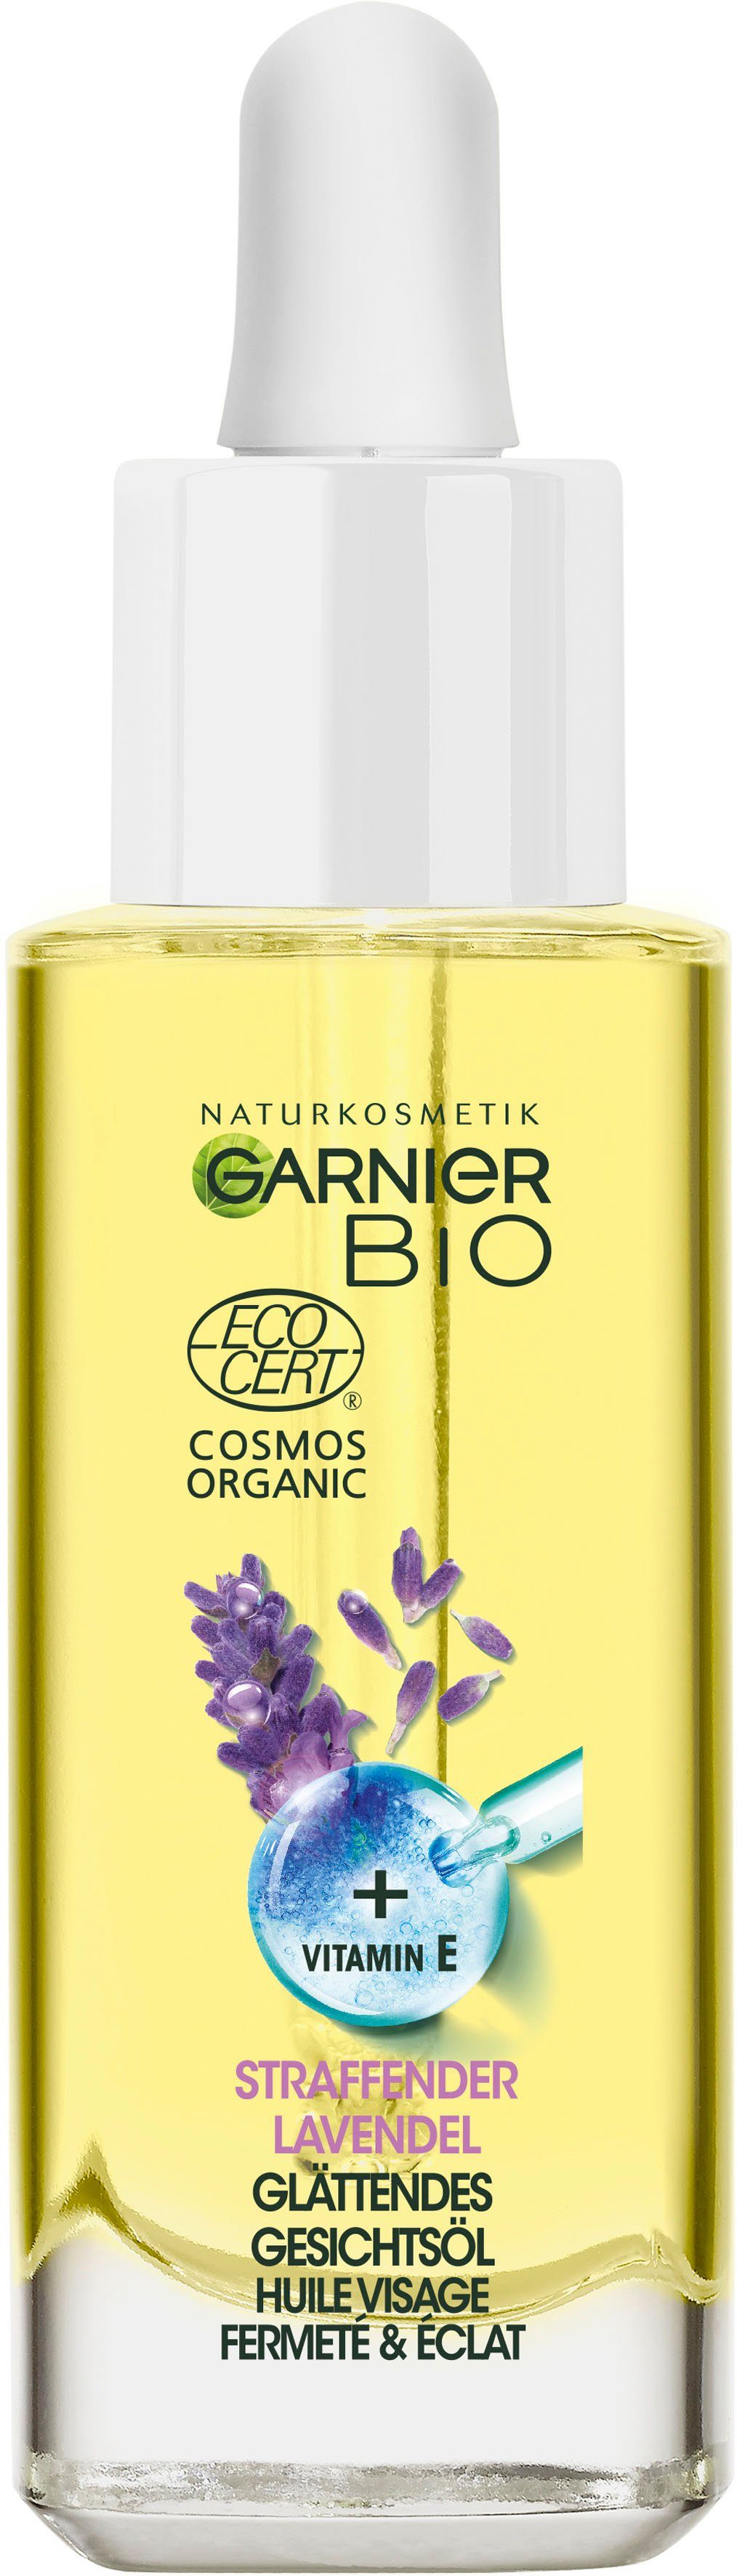 Lavendel Bio Gesichtsöl GARNIER